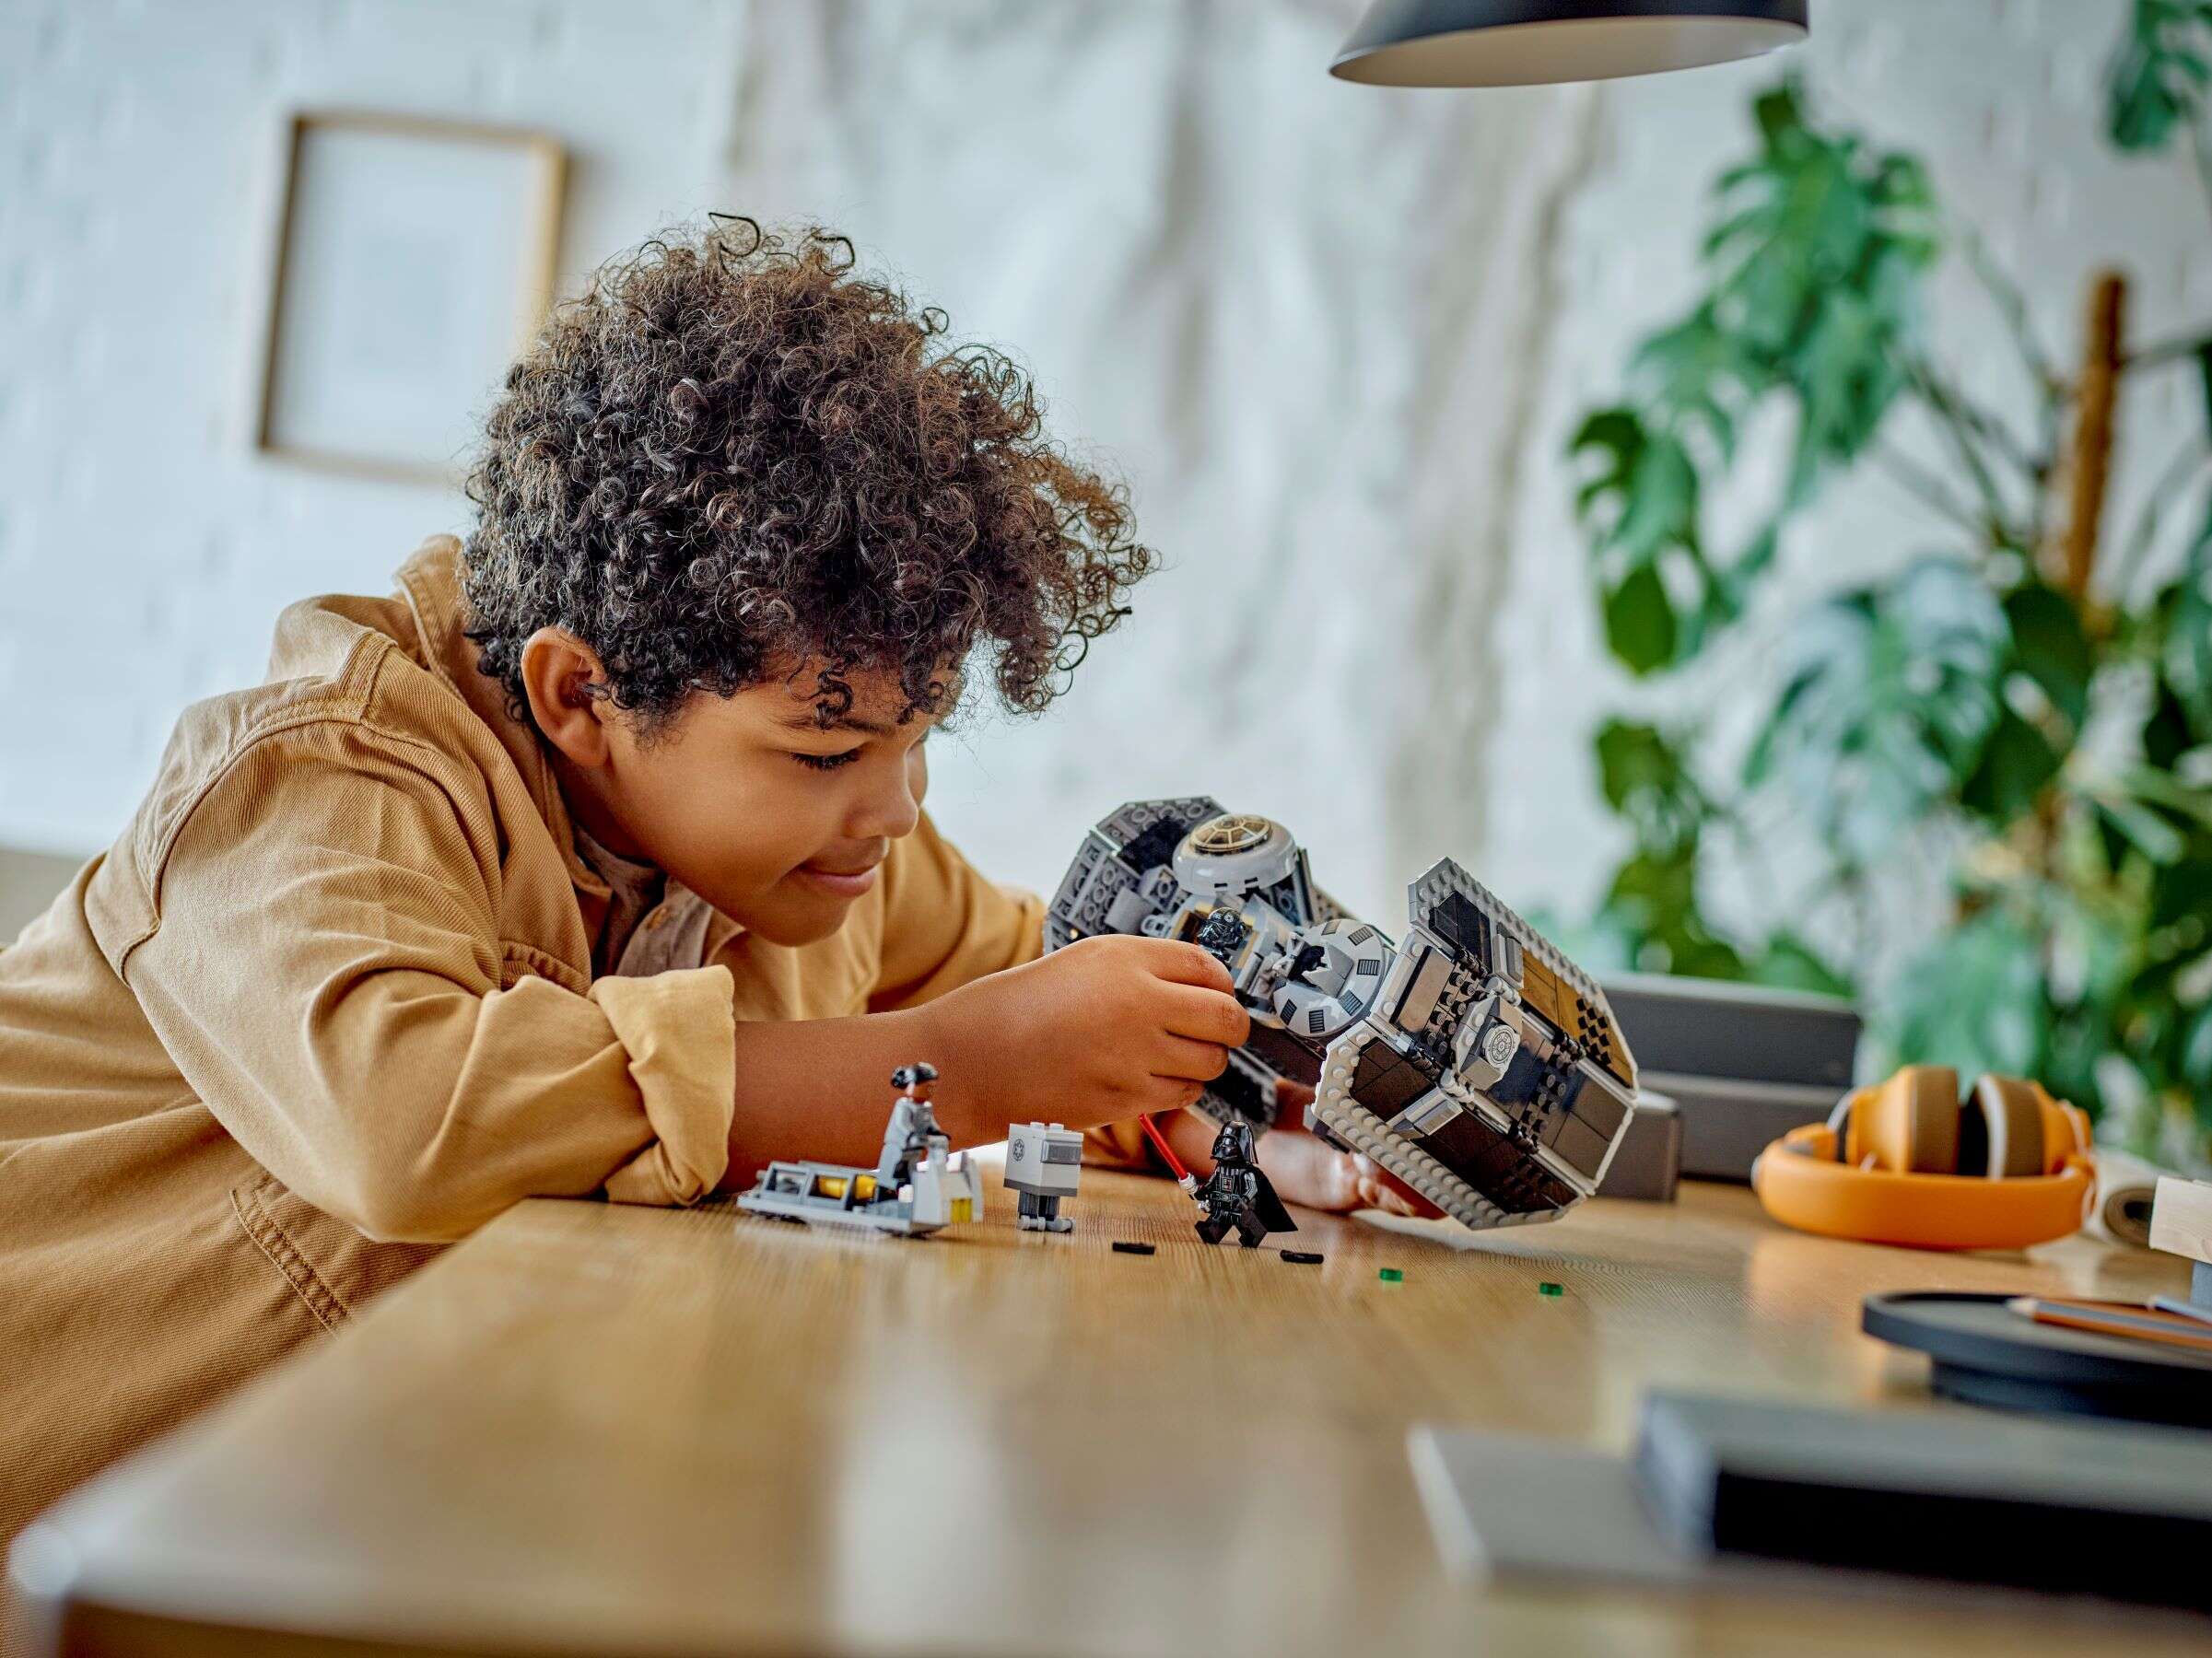 LEGO 75347 Star Wars™ TIE Bomber™, 3 Minifiguren mit Blastern, Gonk-Droide